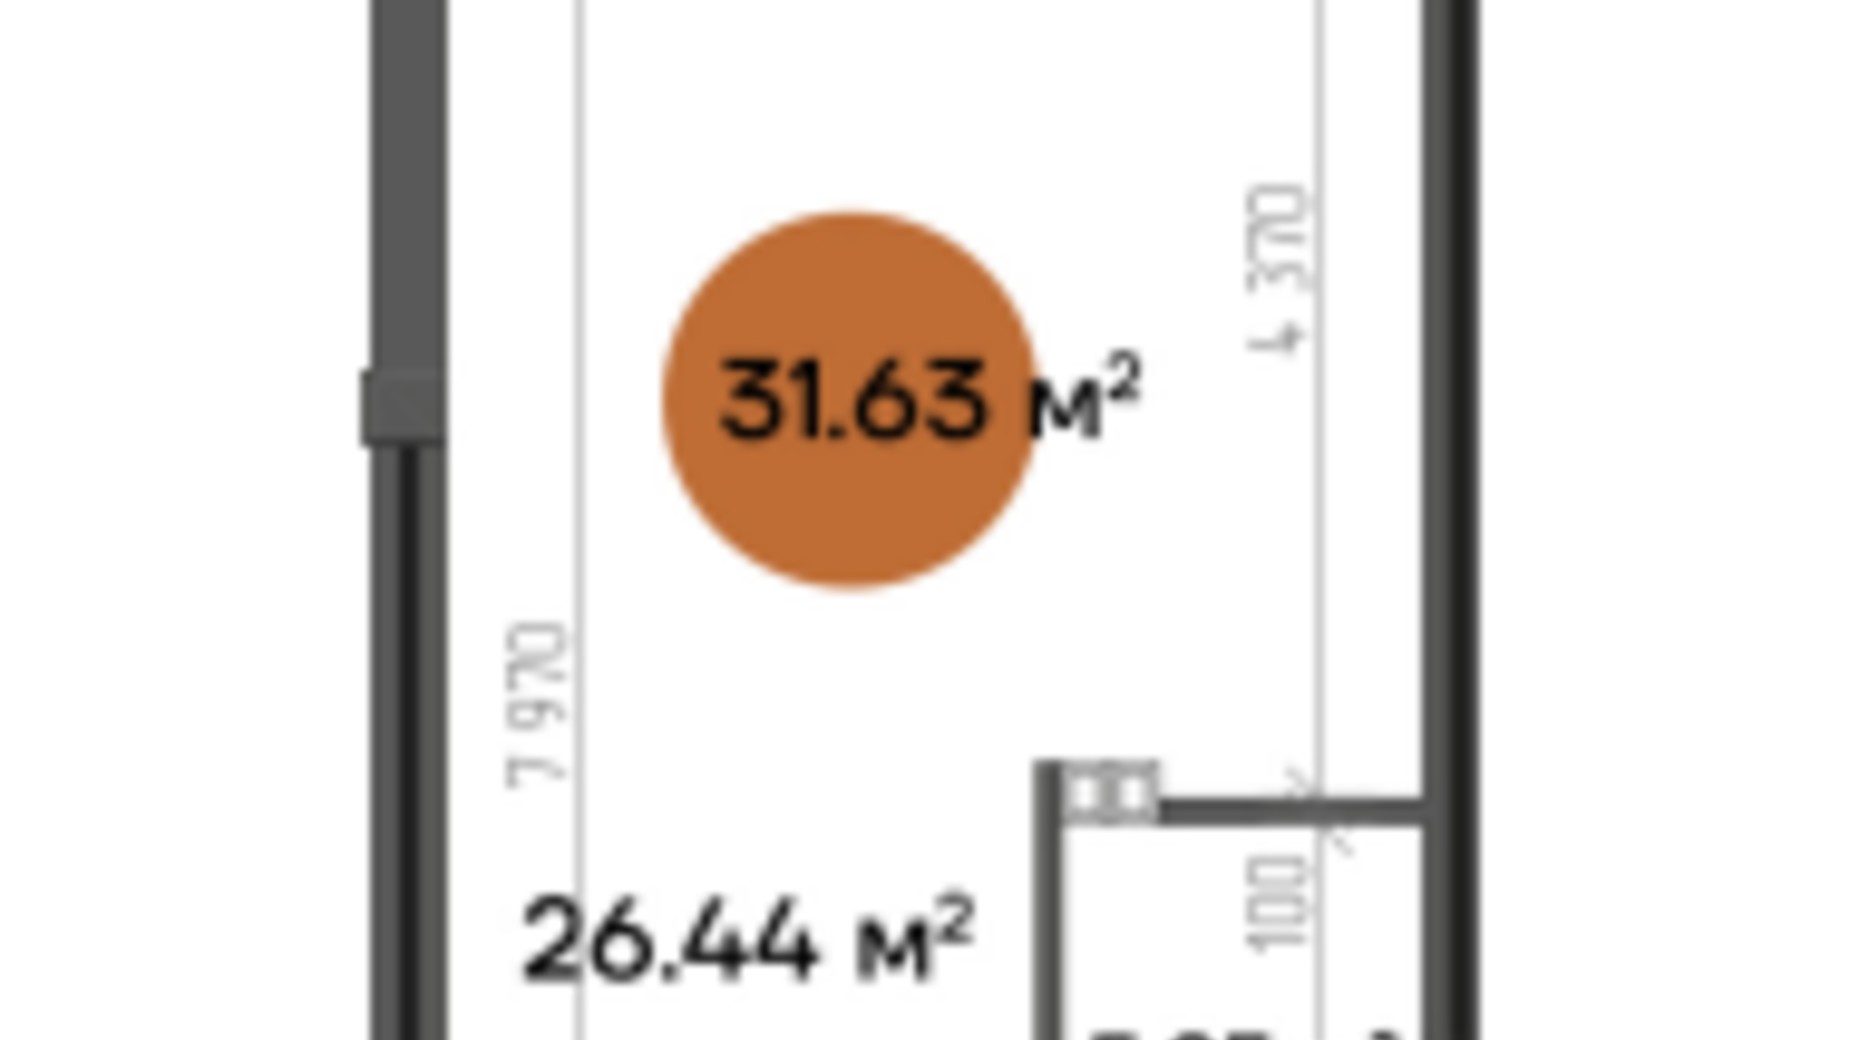 Планировка торгового помещения в МФК Shevchenka 31.63 м², фото 607267